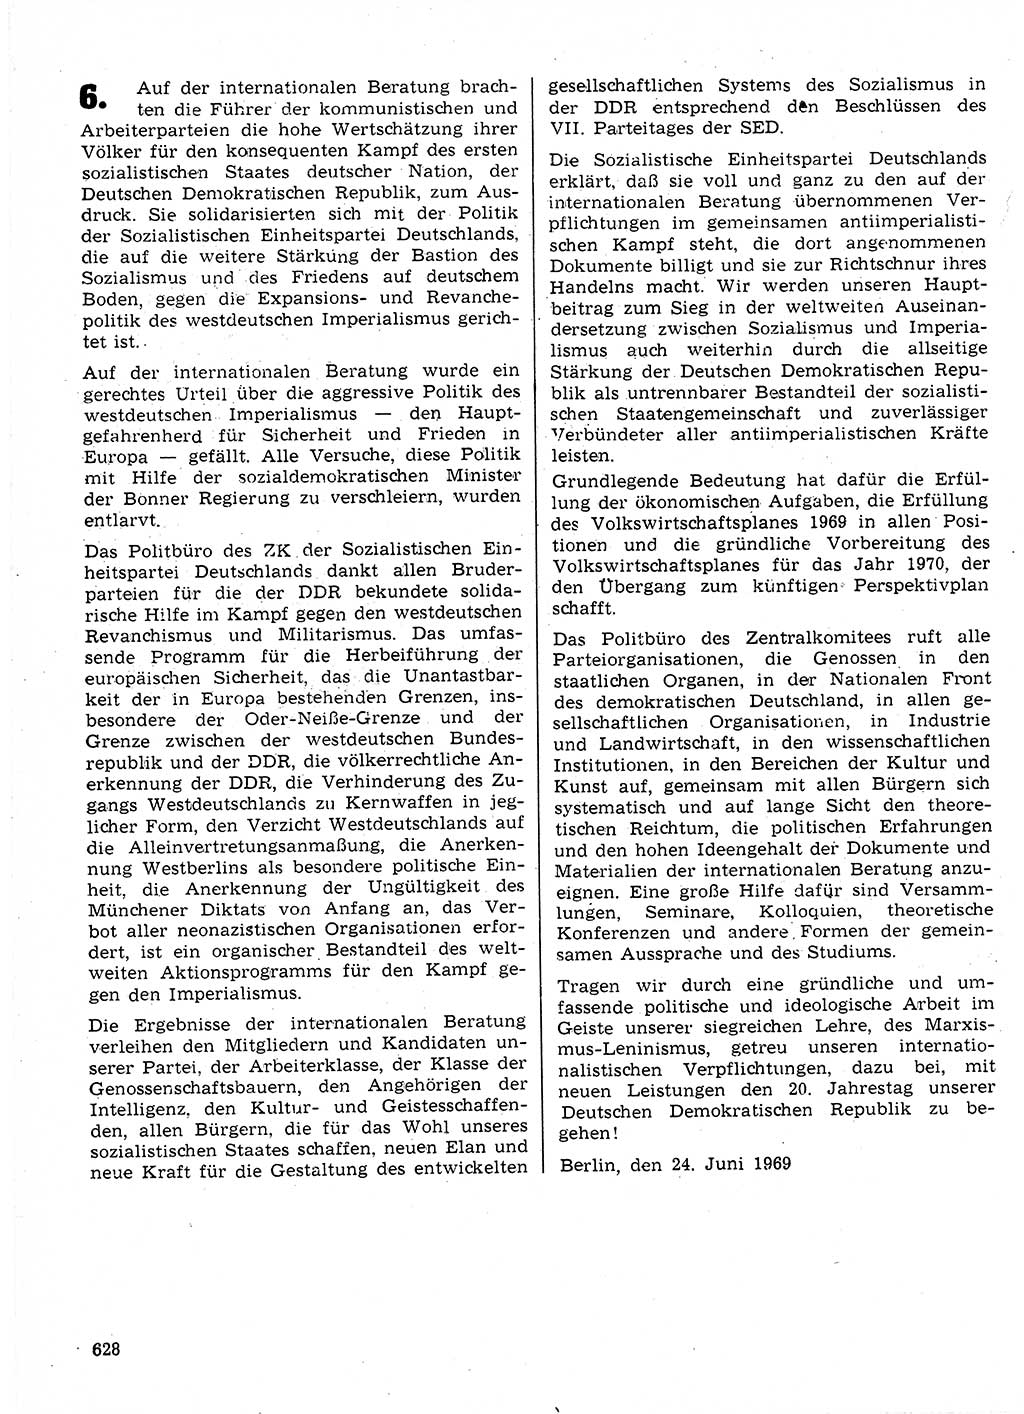 Neuer Weg (NW), Organ des Zentralkomitees (ZK) der SED (Sozialistische Einheitspartei Deutschlands) für Fragen des Parteilebens, 24. Jahrgang [Deutsche Demokratische Republik (DDR)] 1969, Seite 628 (NW ZK SED DDR 1969, S. 628)